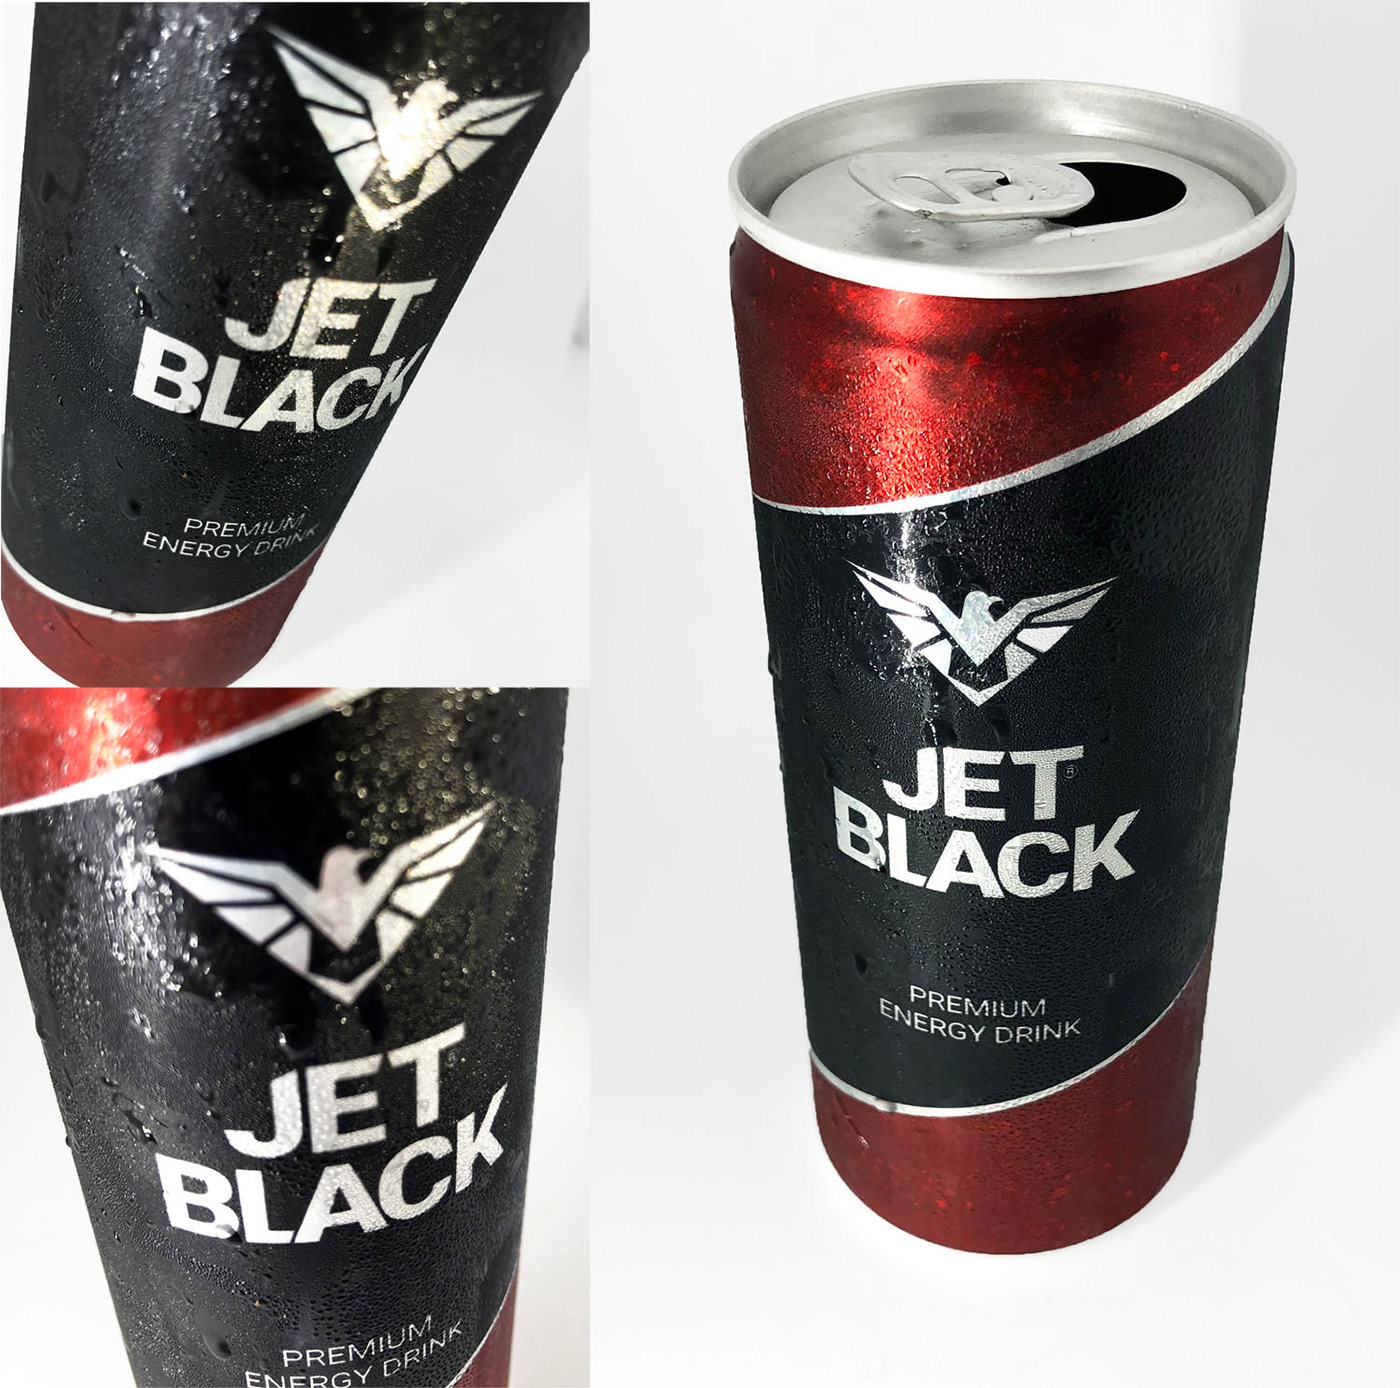 ambalaj tasarımı enerji içeceği energy drink packaging design Ceyhun Akgün ambalajca İçecek tasarımı soft drink